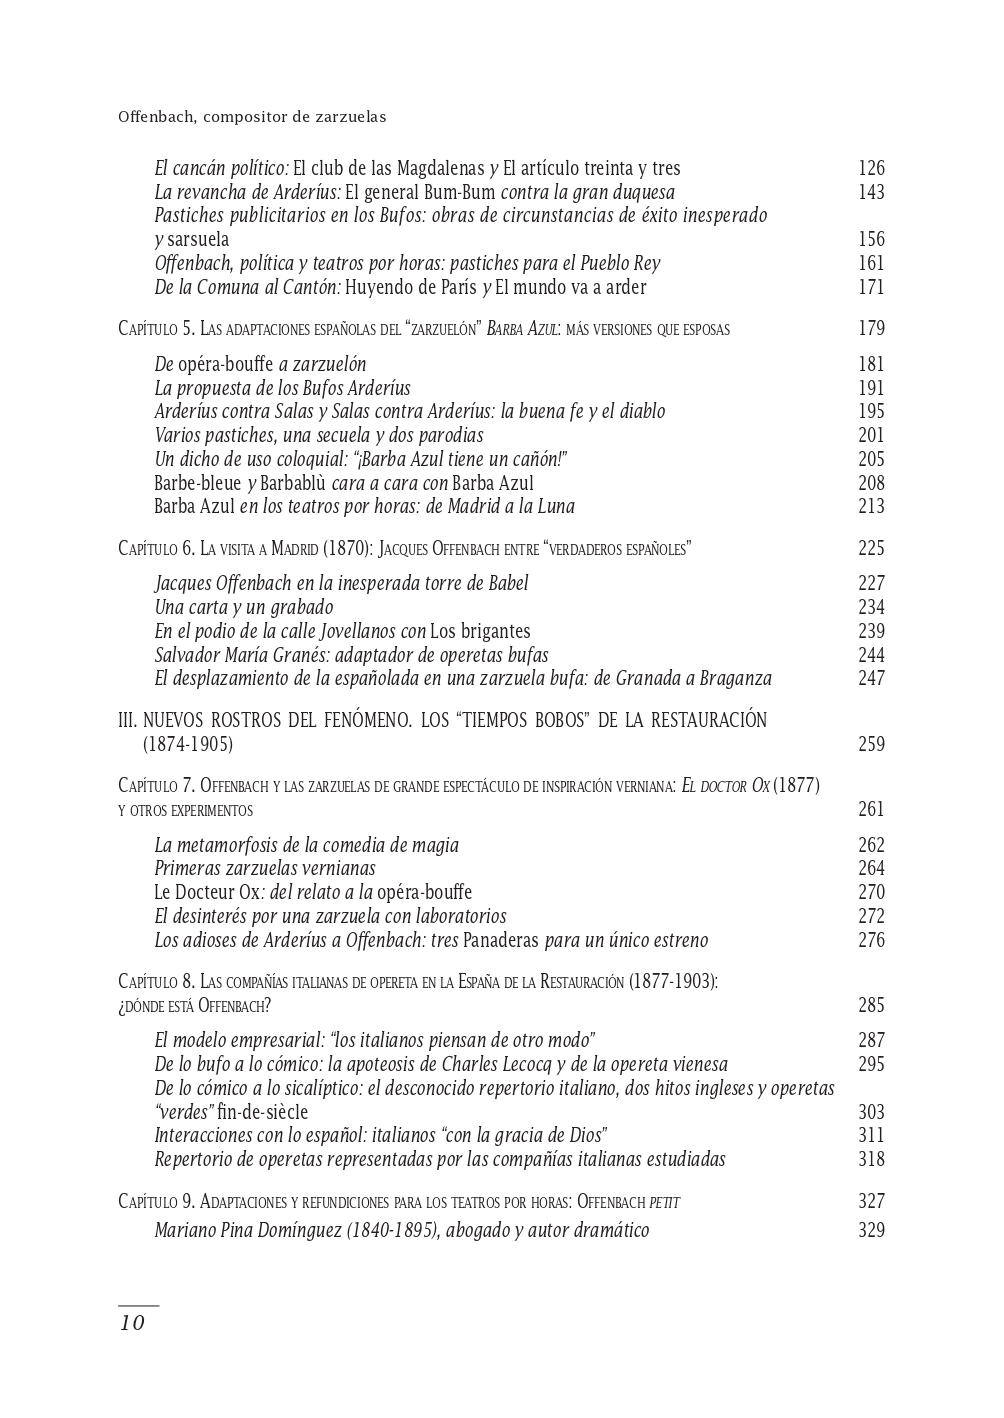 Table of context for Enrique Mejías García’s "Offenbach, compositor de zarzuelas". (Part 2)